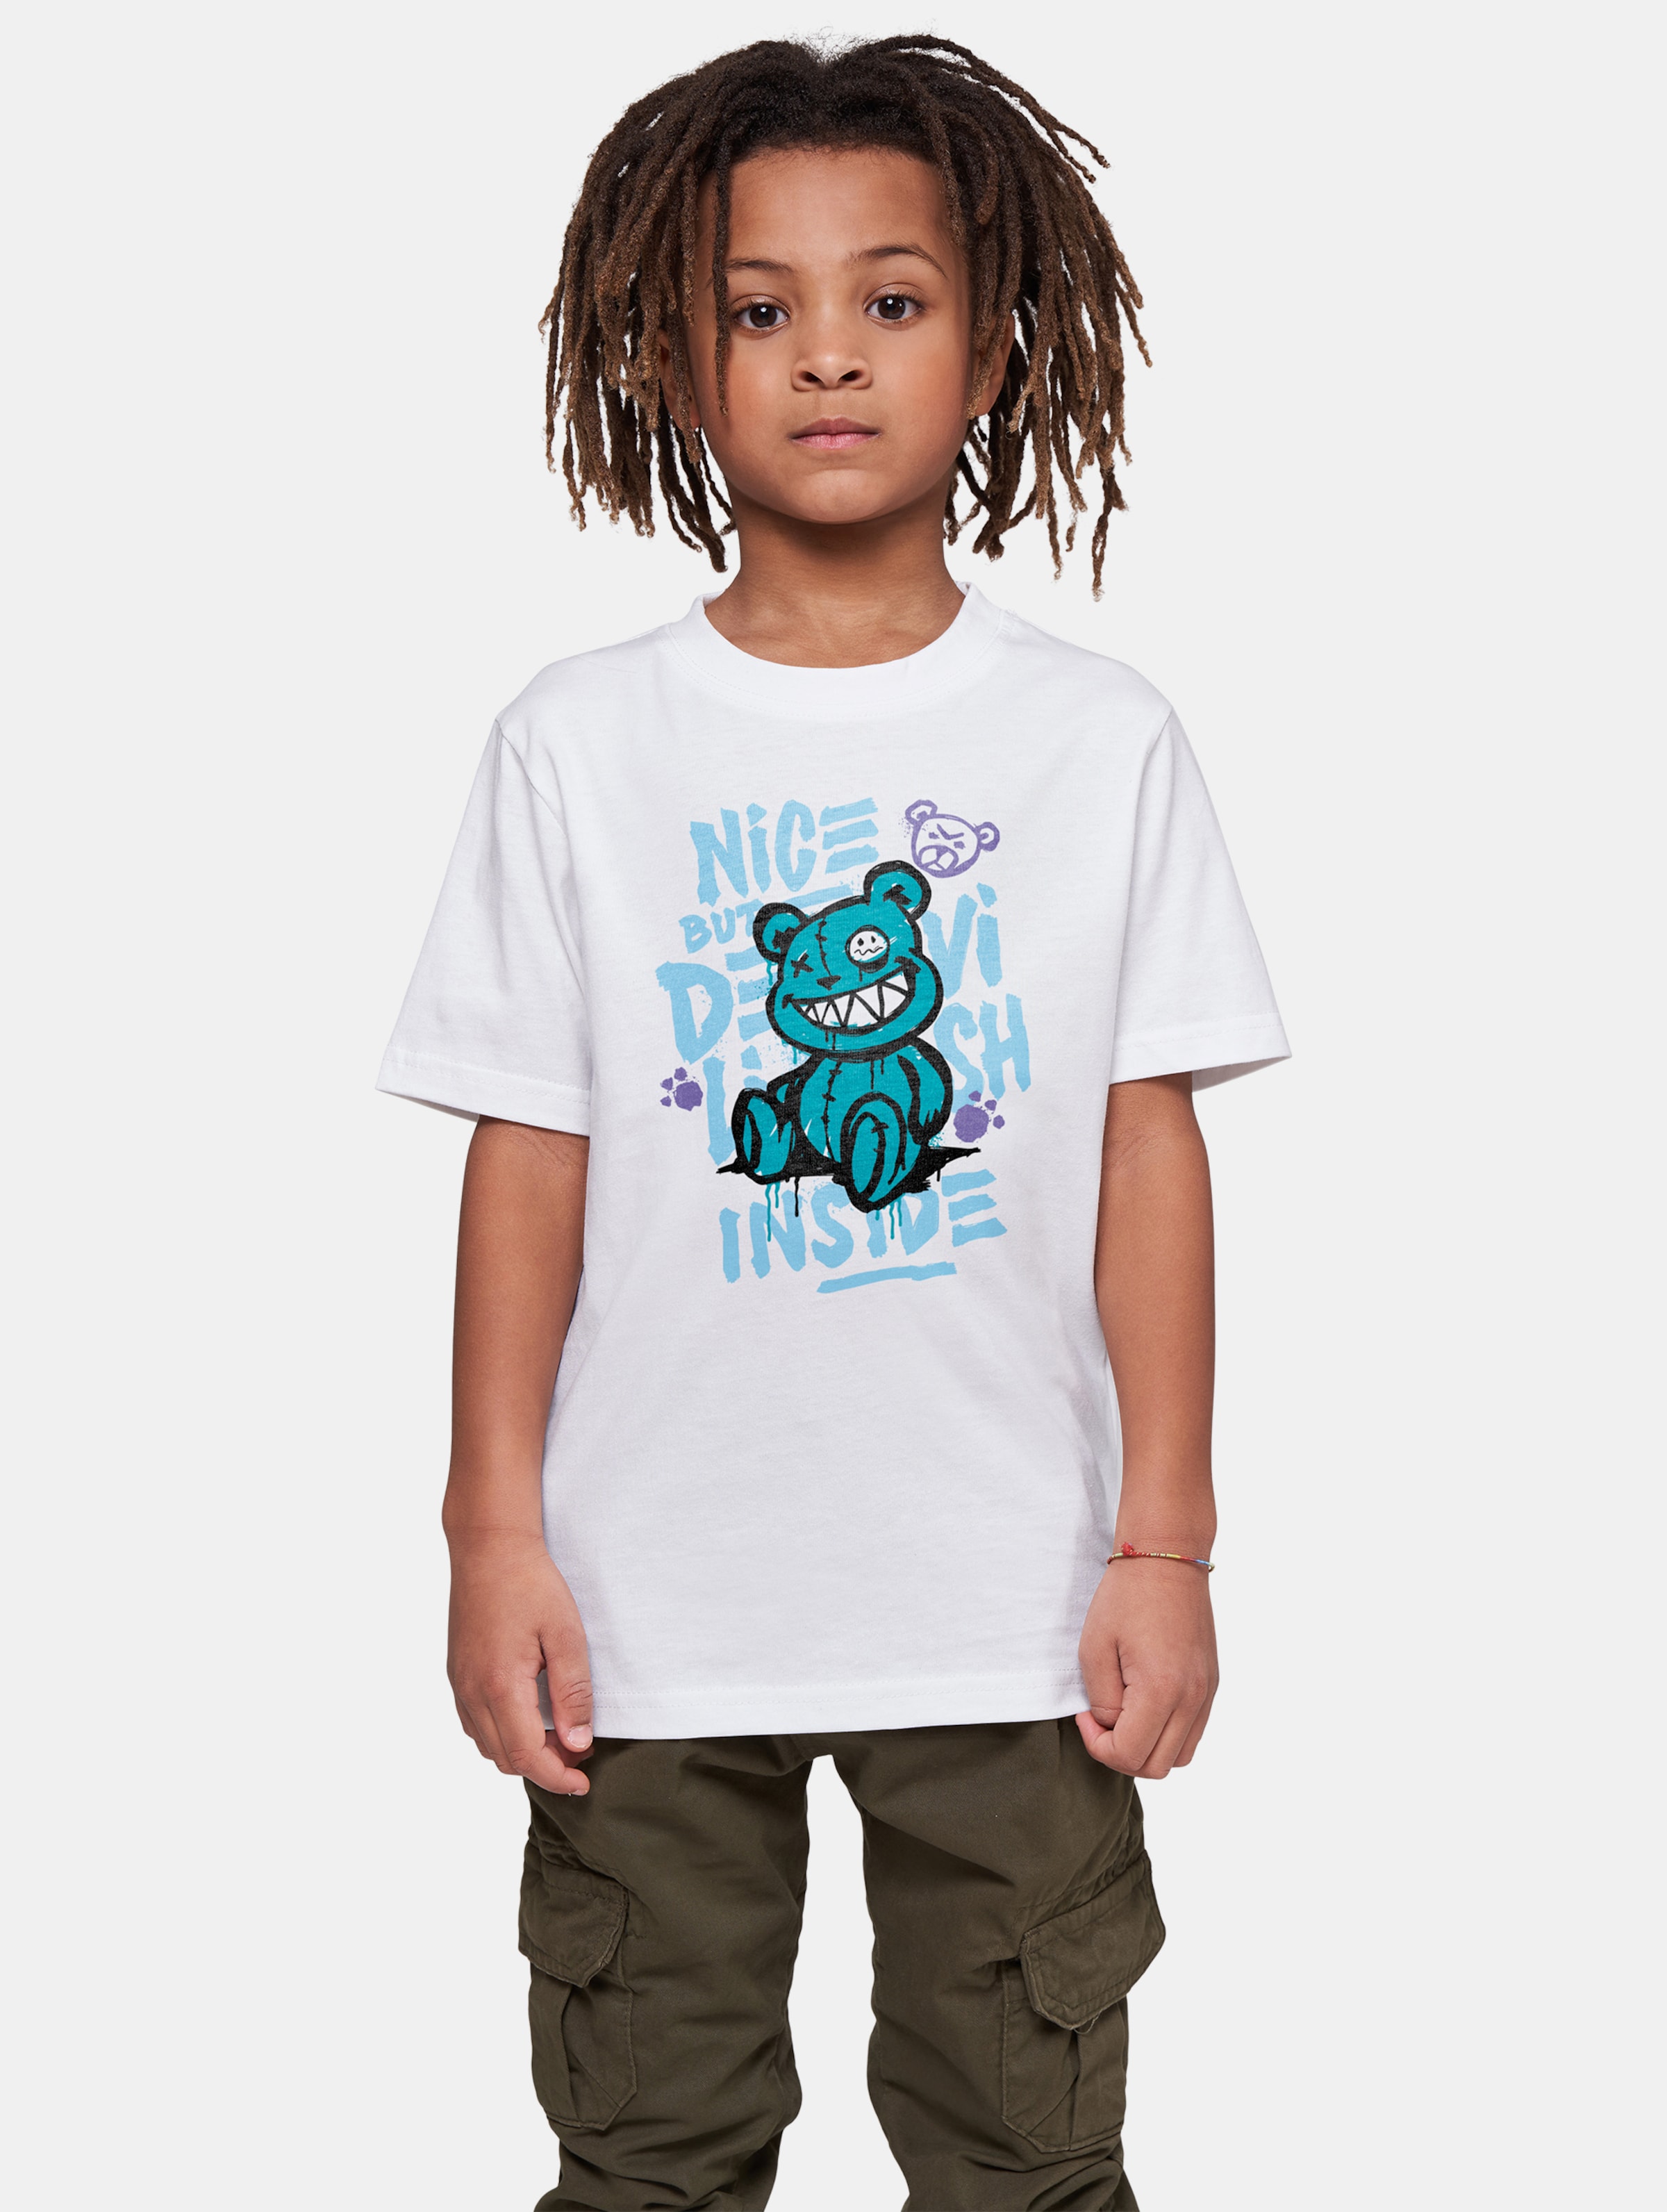 Mister Tee - Nice But Devilish Kinder T-shirt - Kids 122/128 - Wit